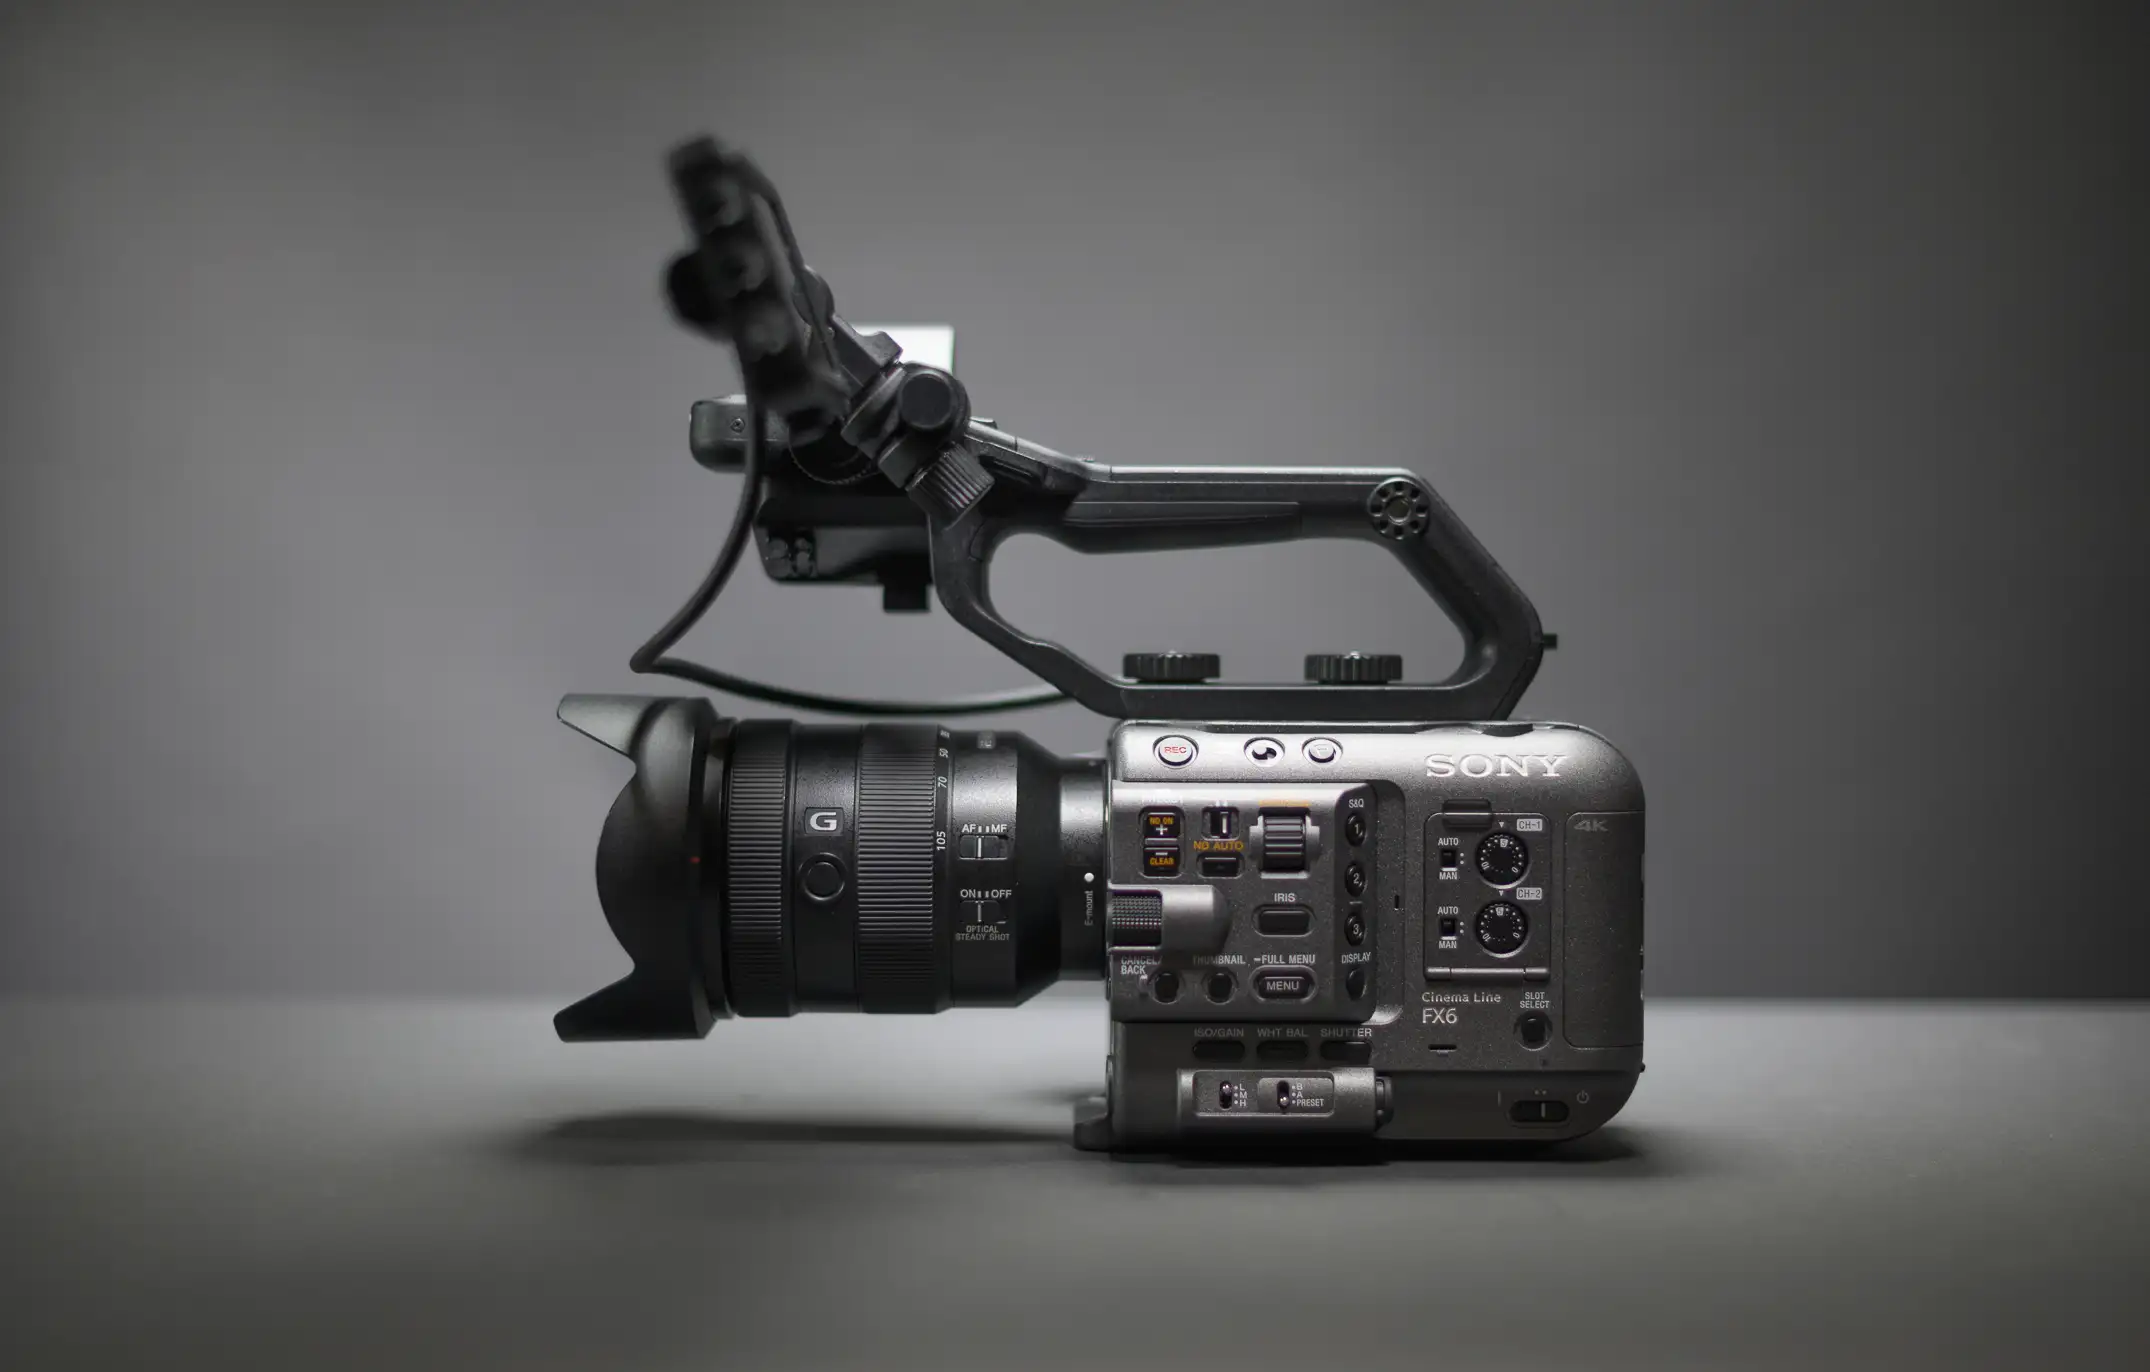 دوربین فیلمبرداری سونی Sony FX6